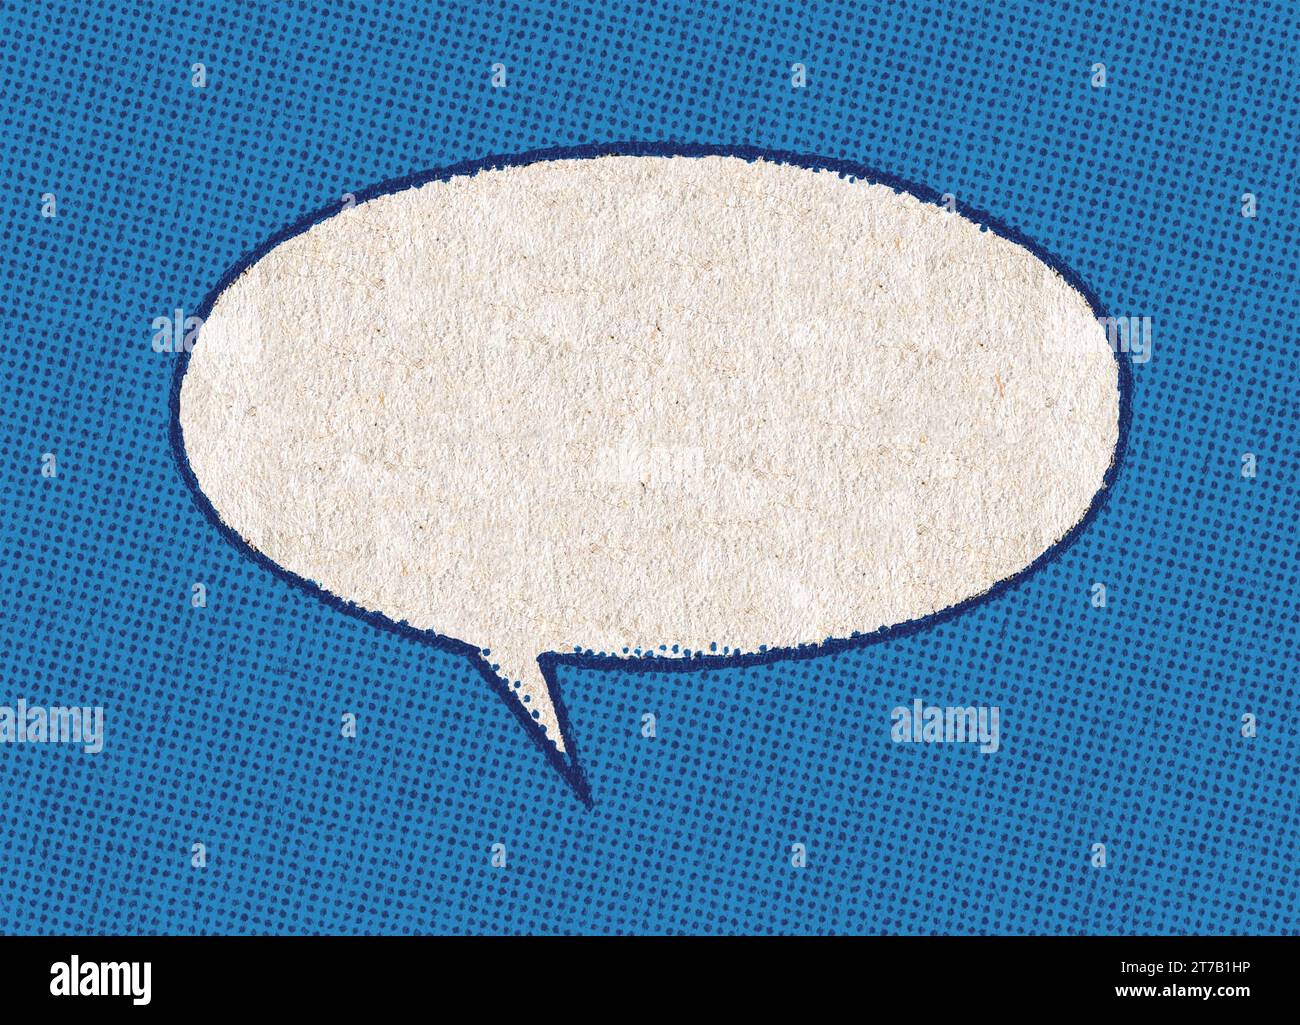 Bulle de chat blanche vide sur un motif de fond de points d'impression bleus de la page de la bande dessinée vintage réelle Banque D'Images